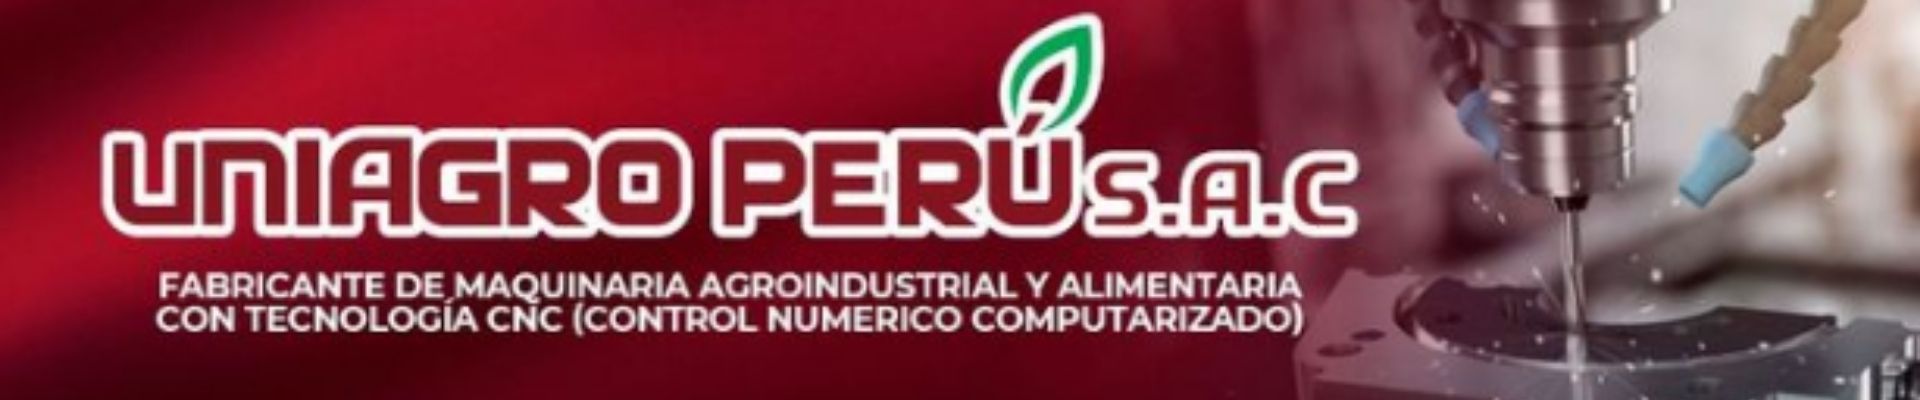 Cortesúa de; Uniagro Perú.